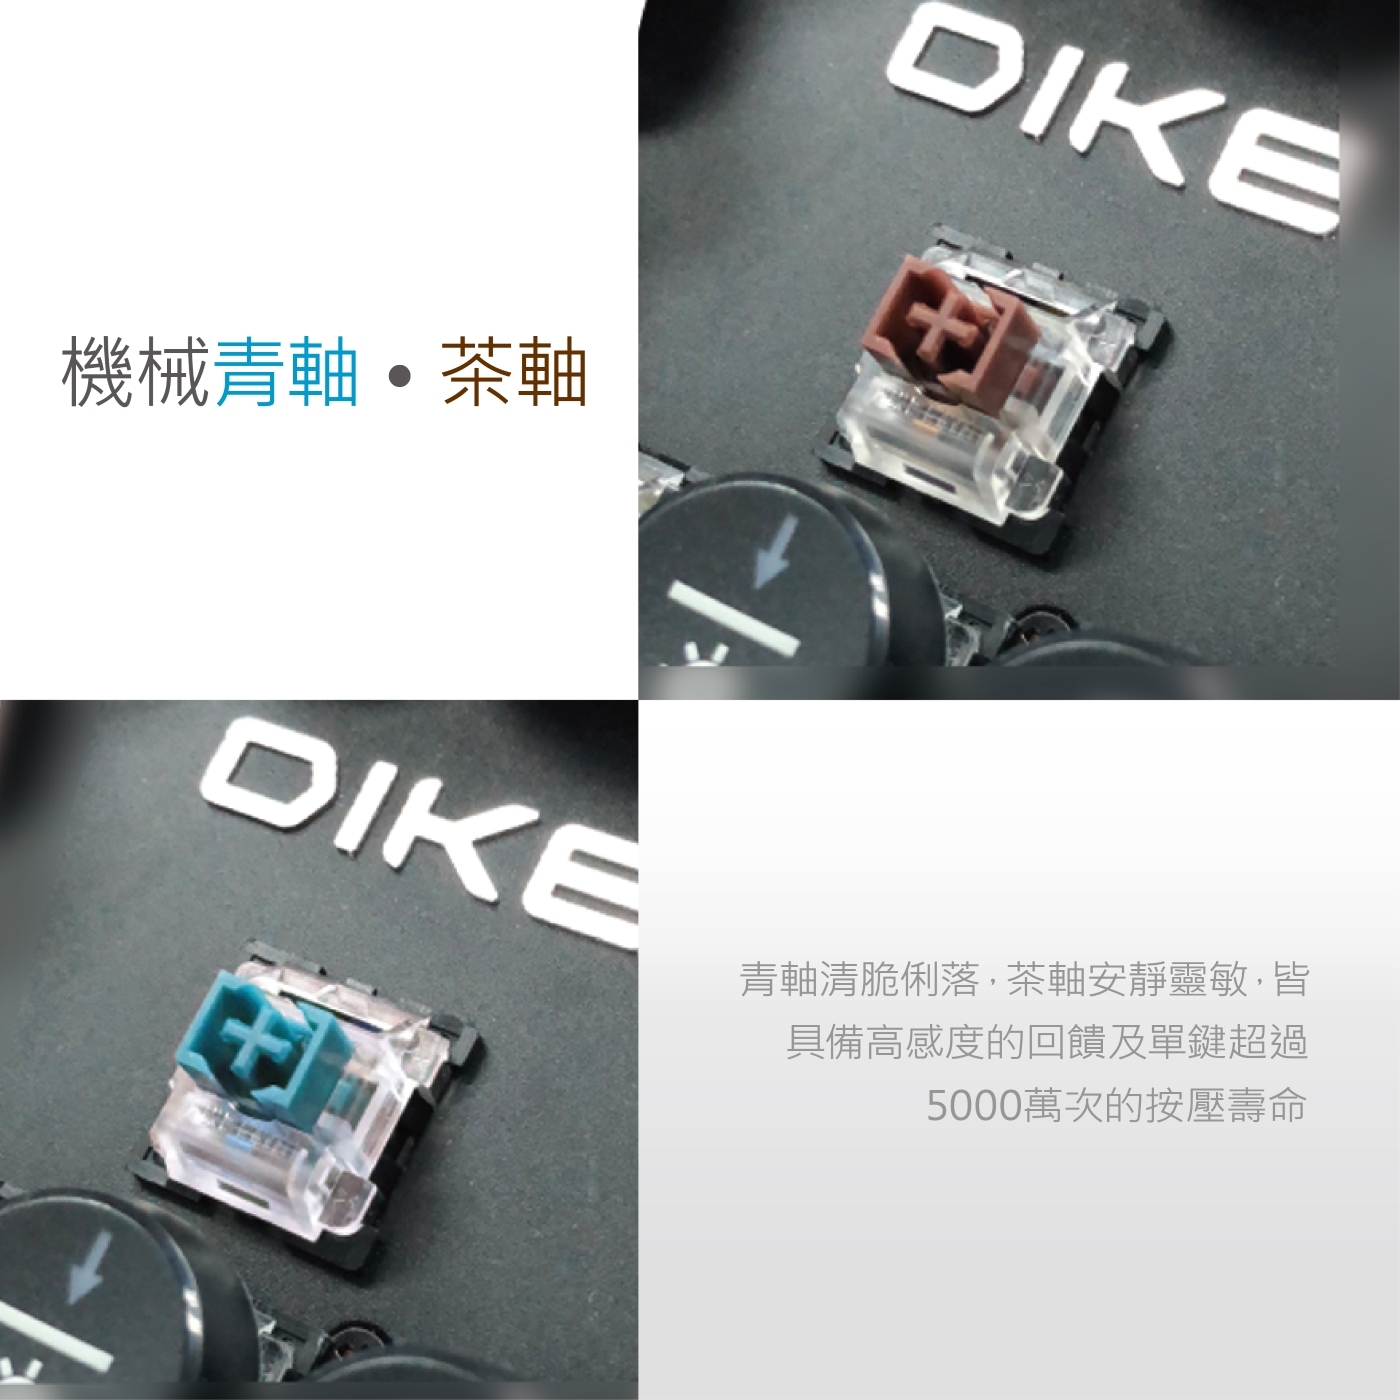 DIKE 復古圓鍵機械鍵盤104鍵-茶軸 DK900BK-BR